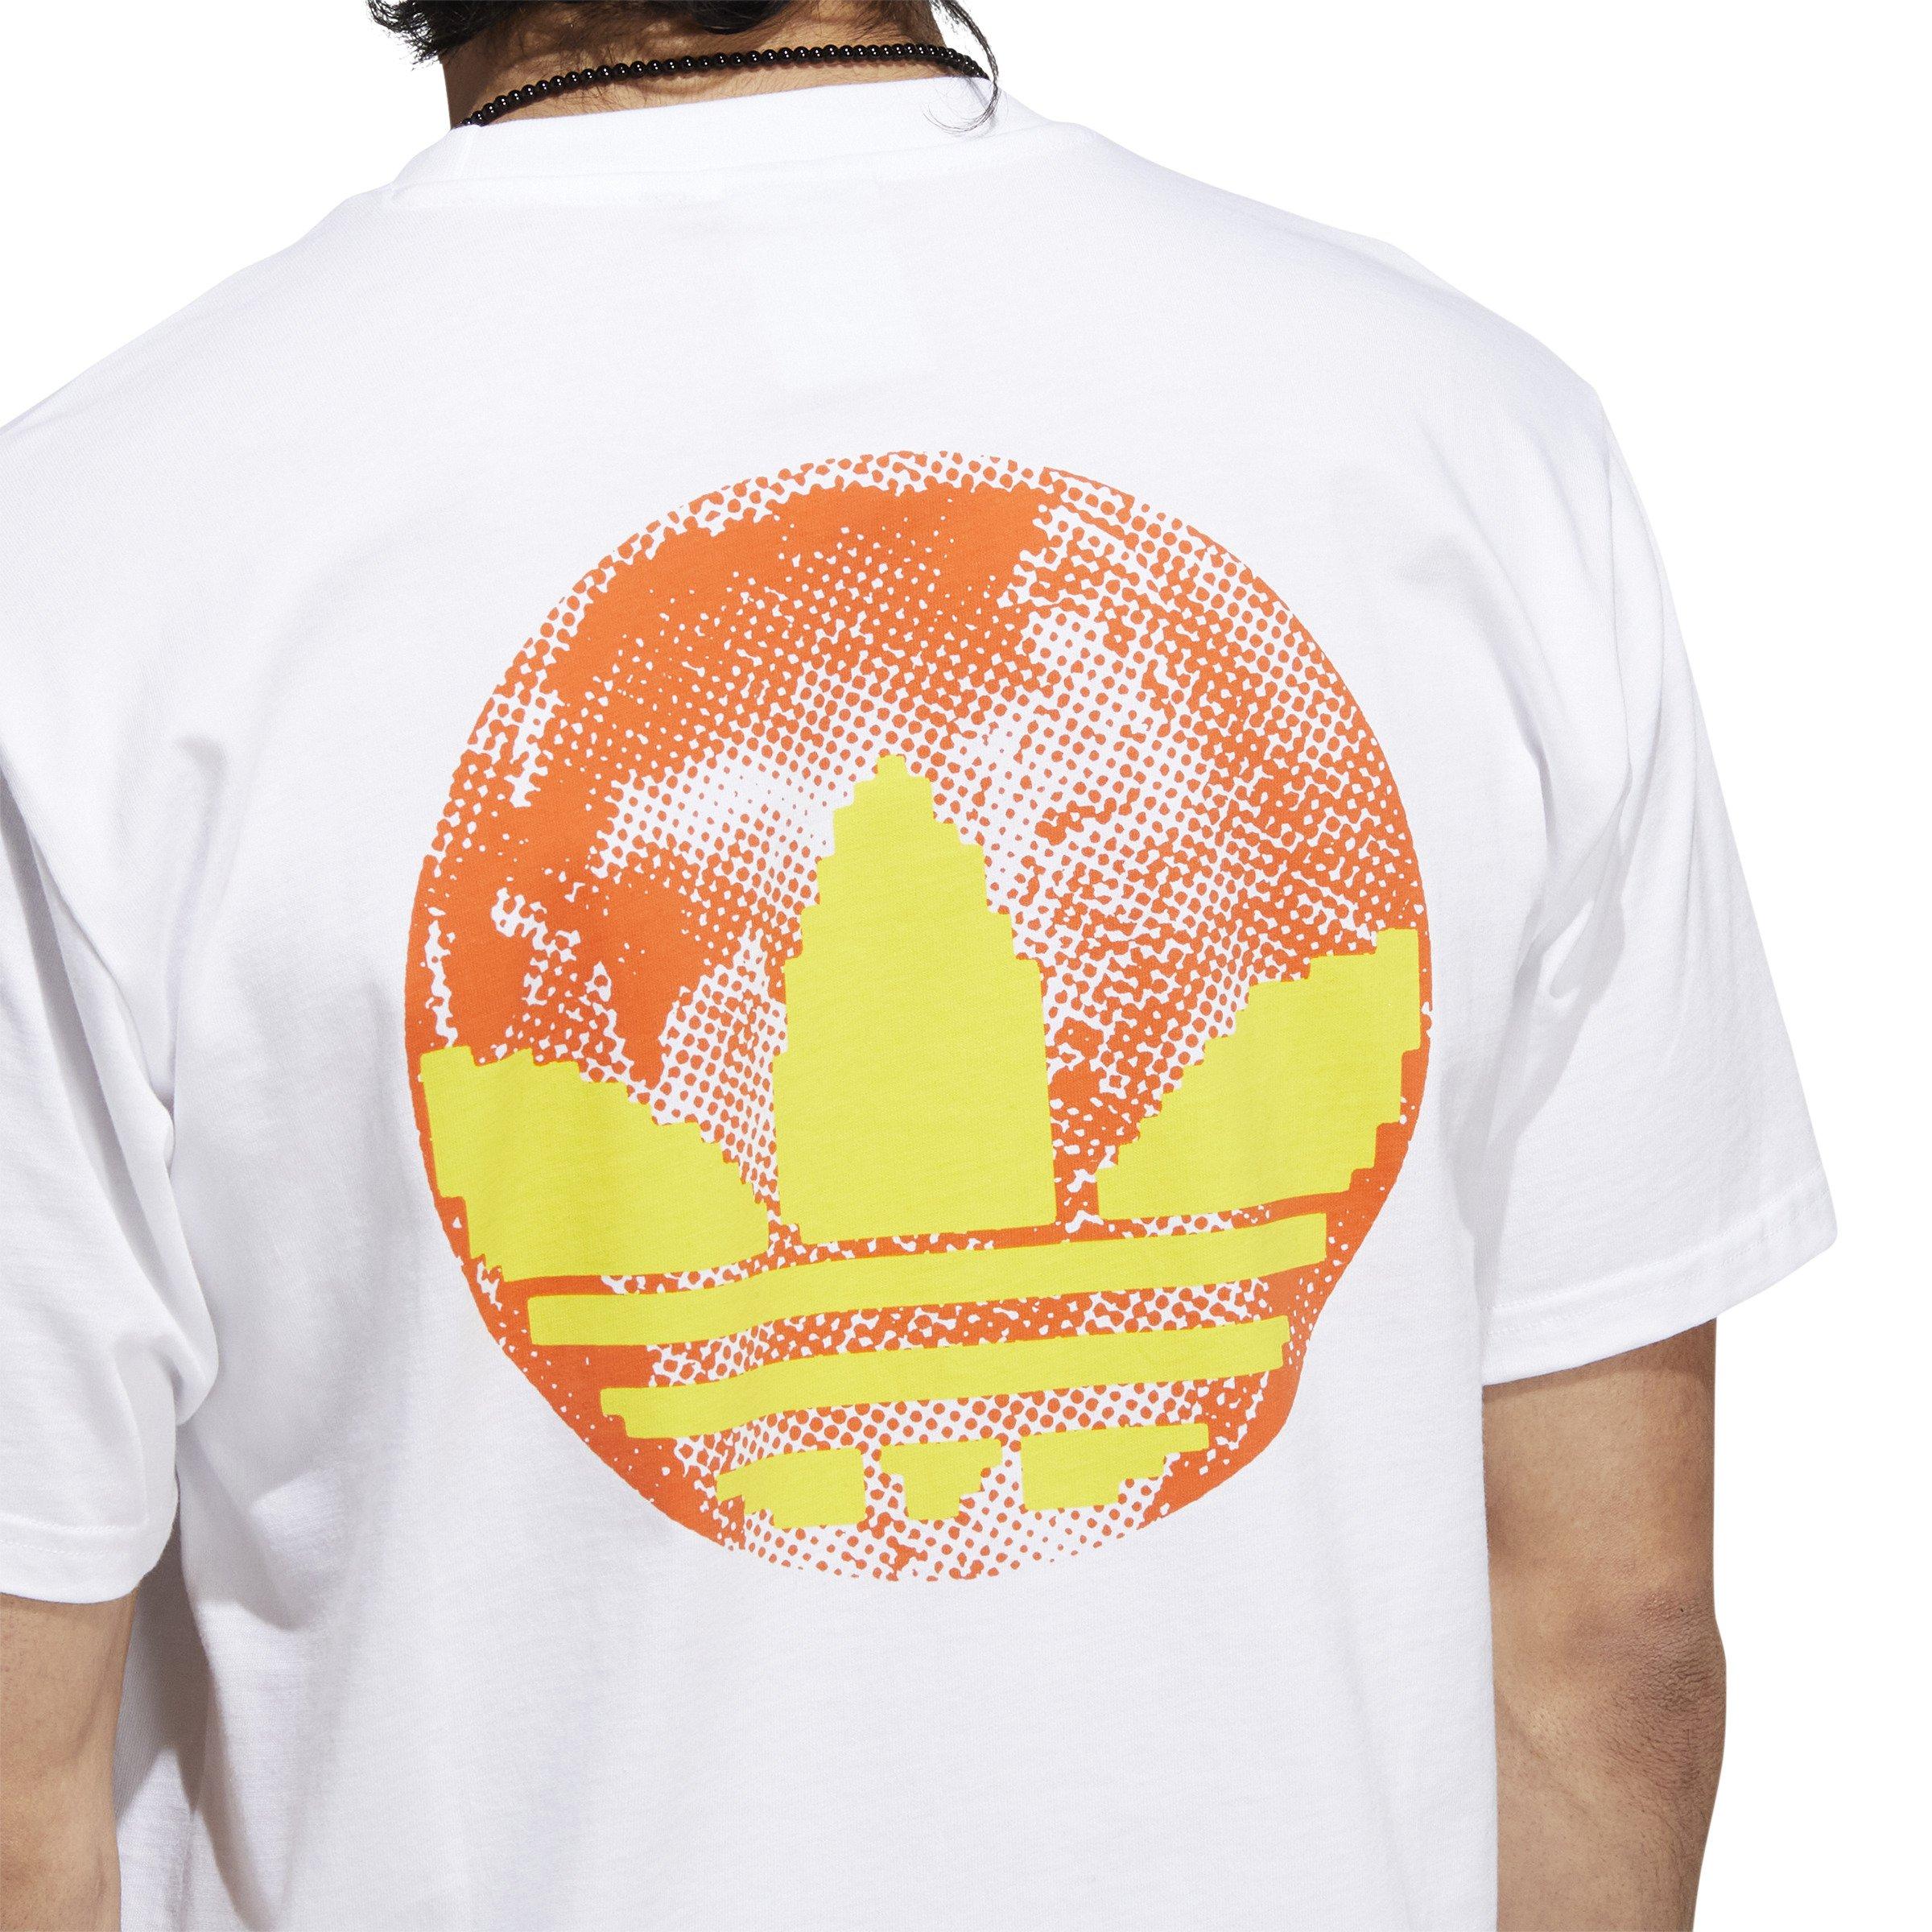 Adidas Originals Hypersport Graphic T-Shirt in Orange